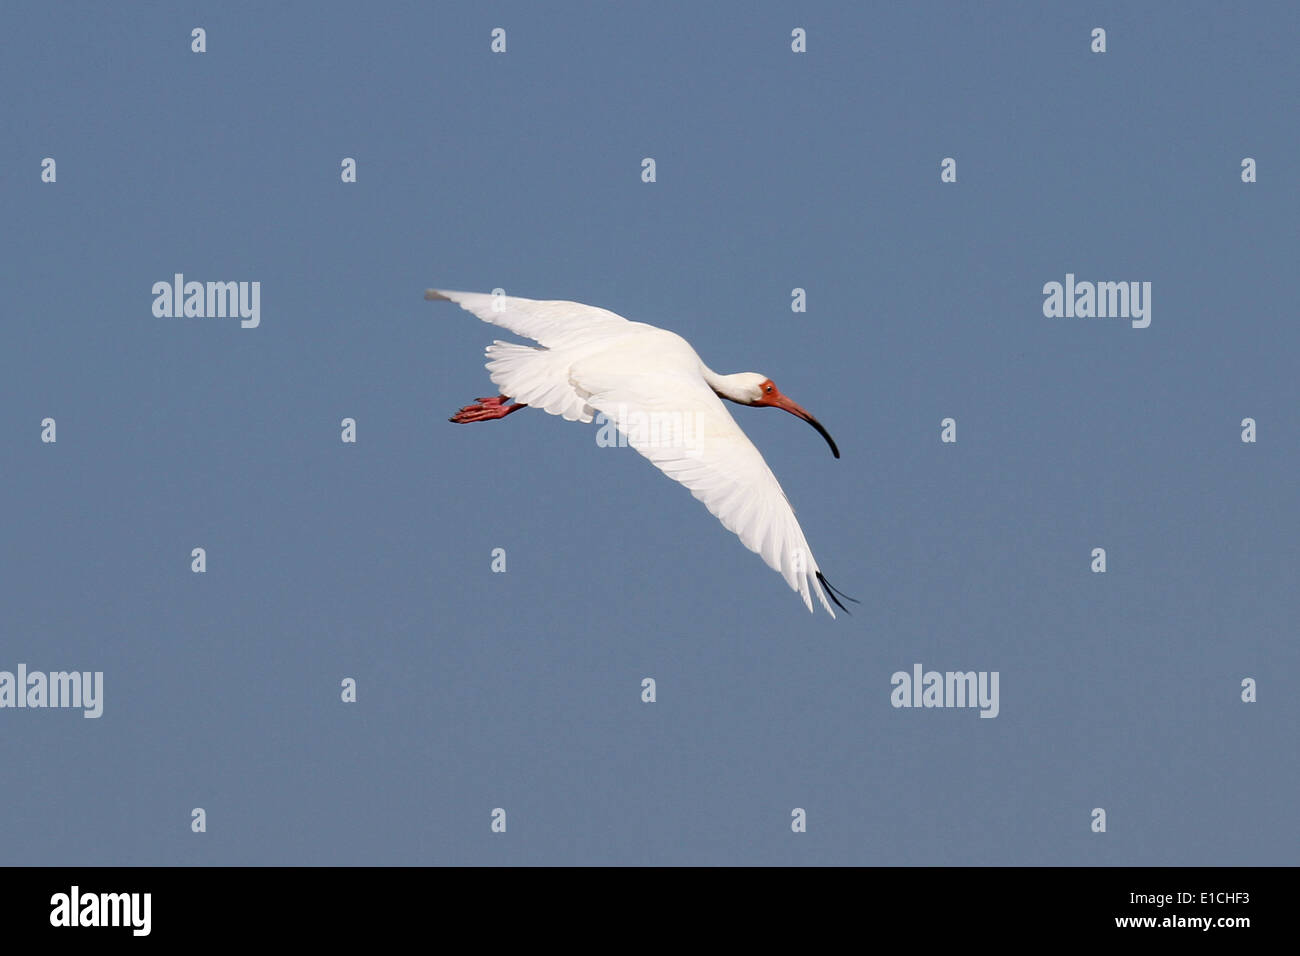 Un Ibis Blanco en vuelo Foto de stock